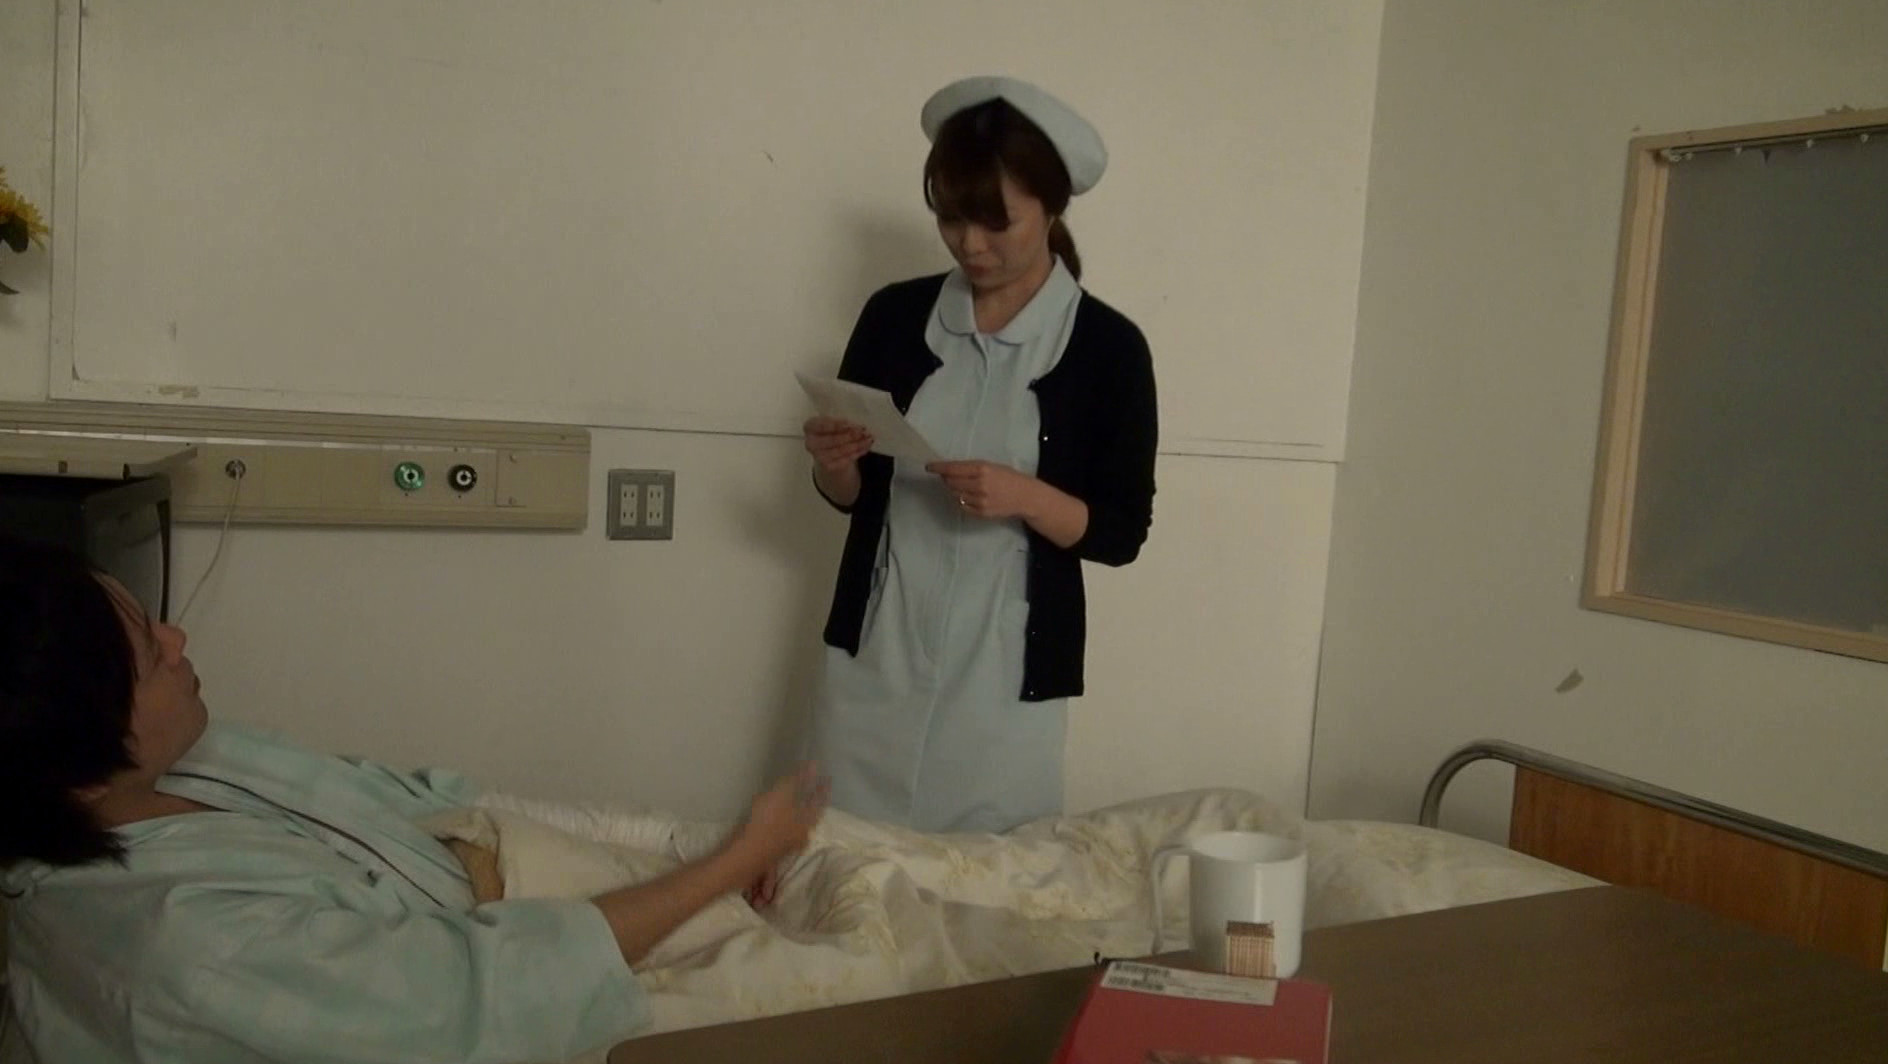 夜勤の熟女看護師にねだり猥褻 はつらつとした美熟女ナースには健康的な勃起アピールと猥褻な口説き文句が効く 2 イメージ1